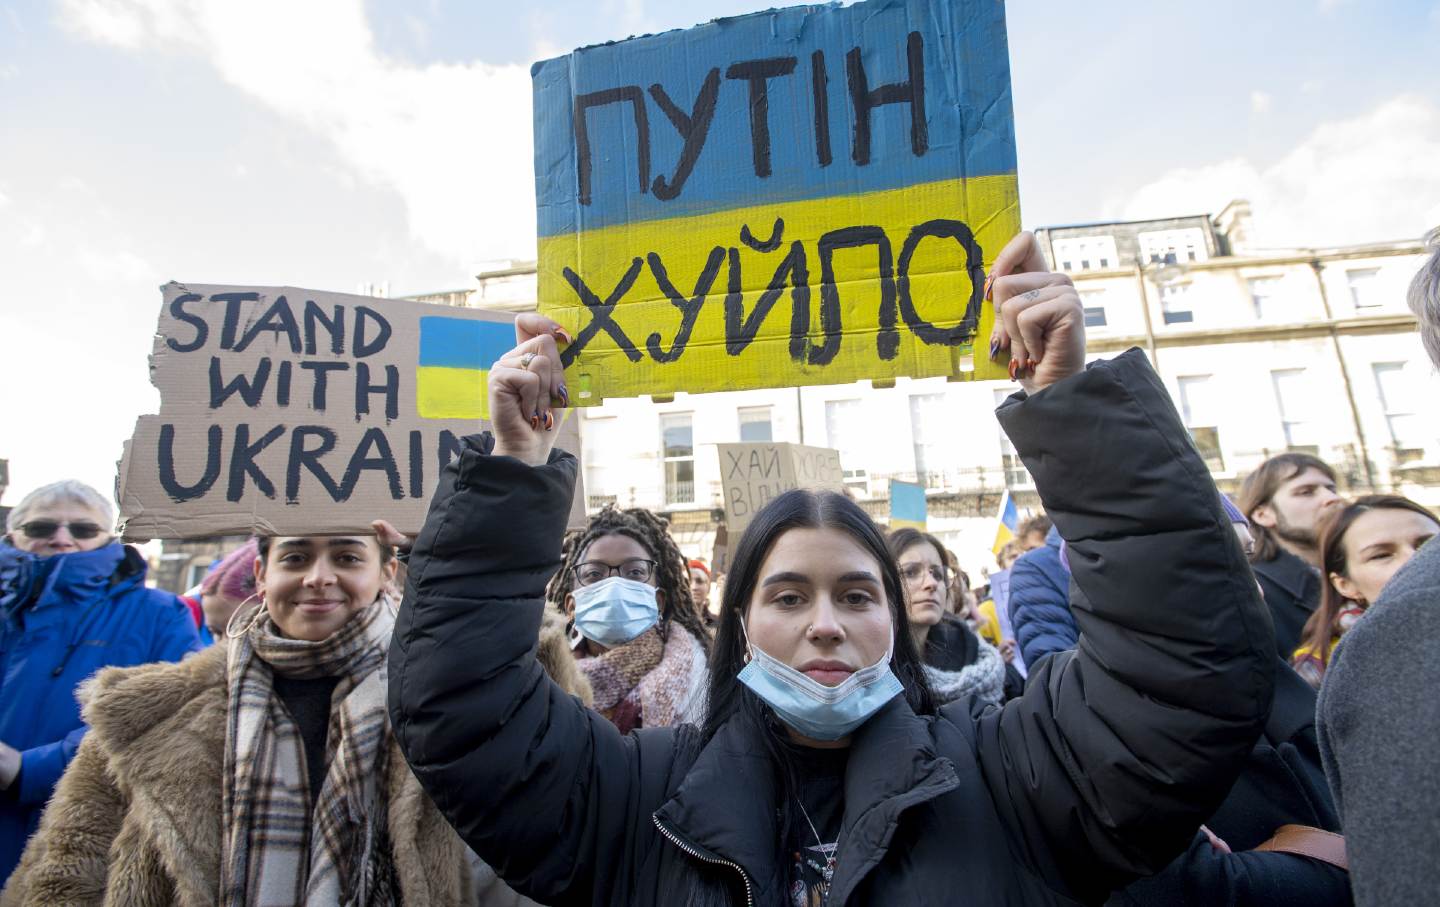 Ukraine peace protest